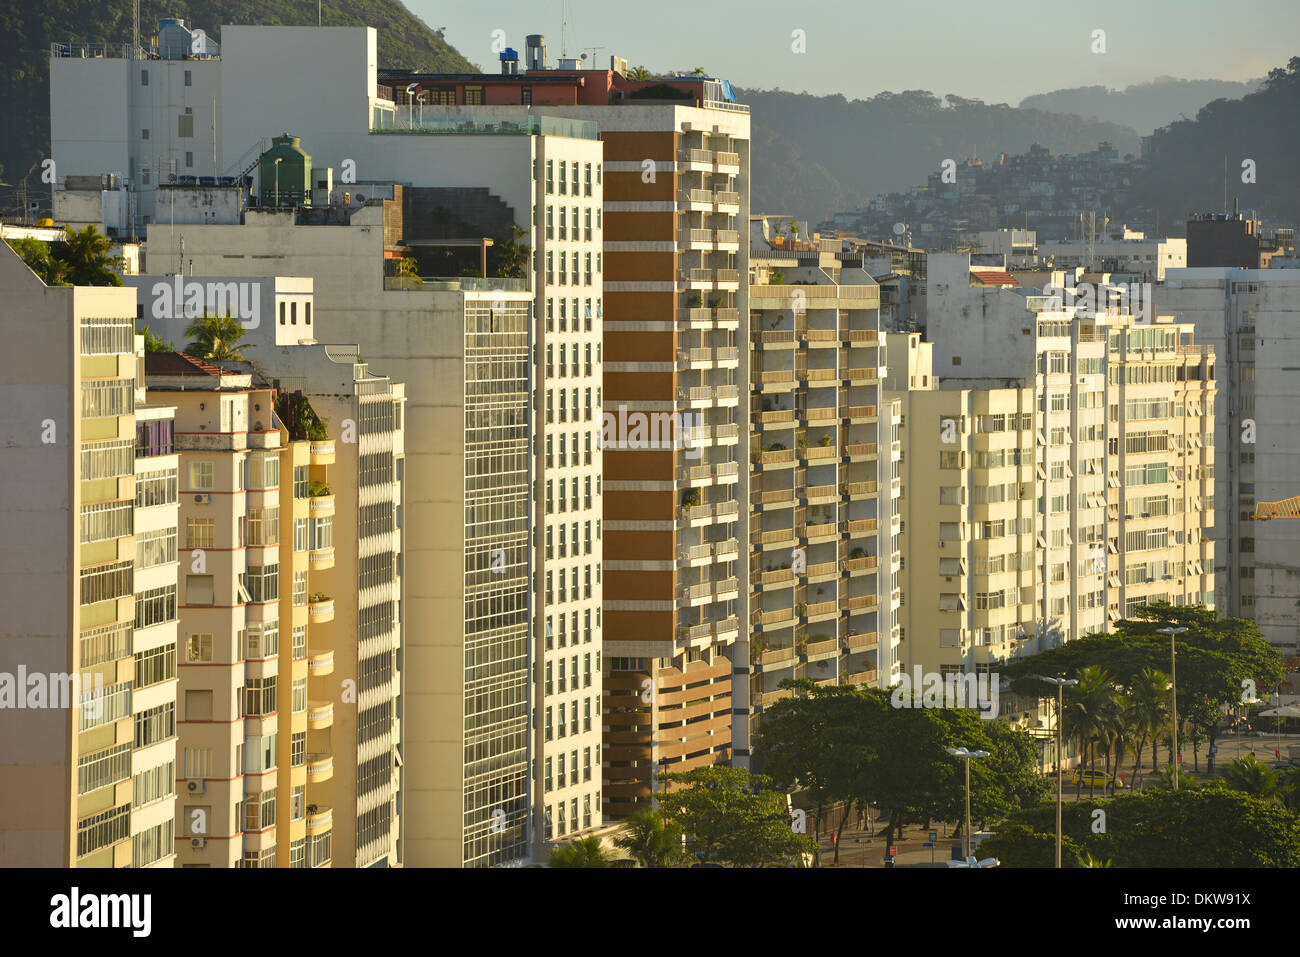 South America, Latin America, Brazil, Rio, Rio de Janeiro, city, Rio, Copacabana, buildings, facades Stock Photo